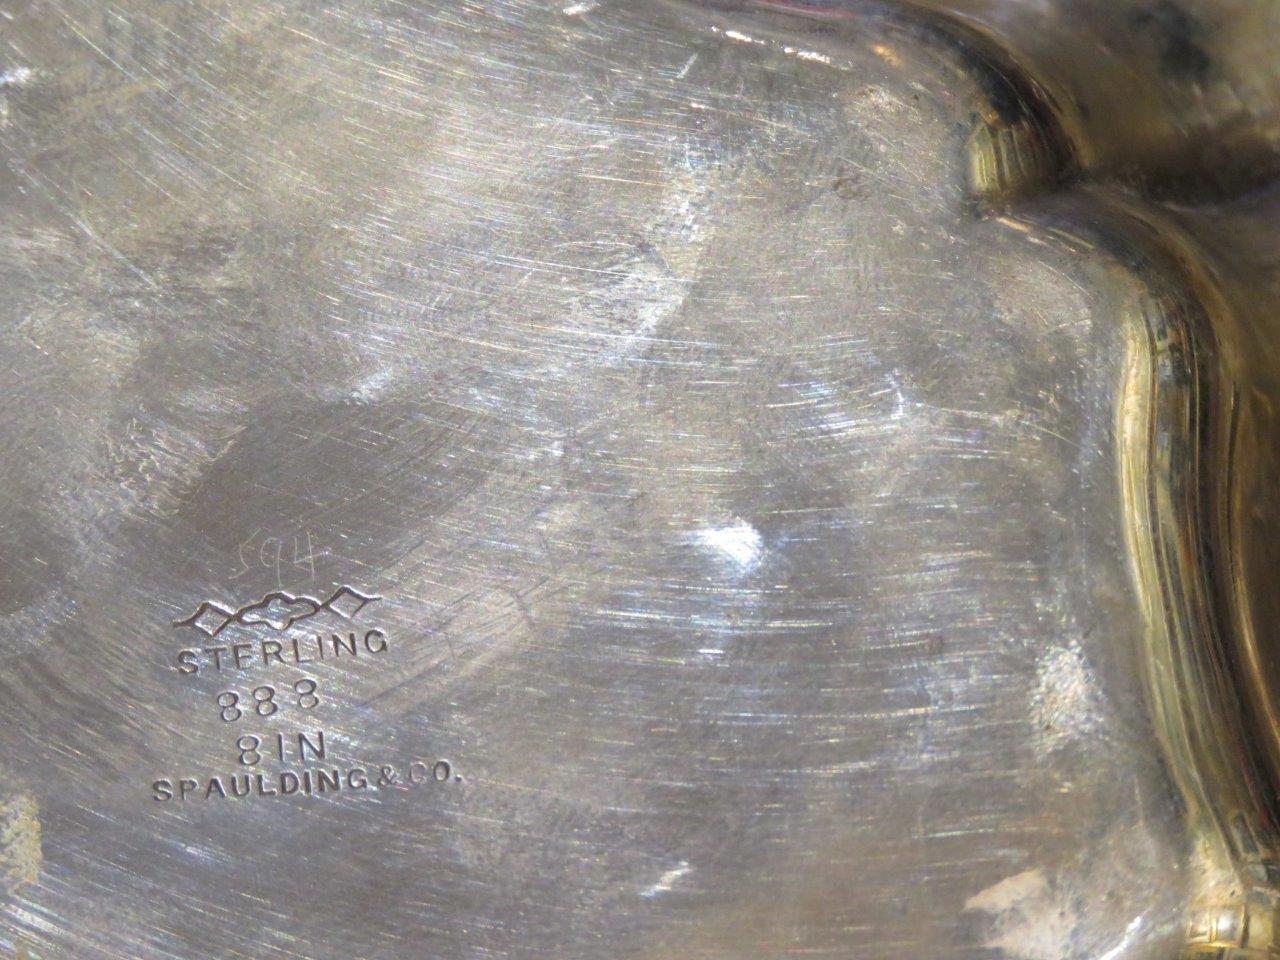 L'article suivant est un Rare Important Gorgeous Rococo Spaulding Sterling Silver Compote Bowl. Le bol est composé de grandes fleurs finement serties et entrelacées. Mesure 8